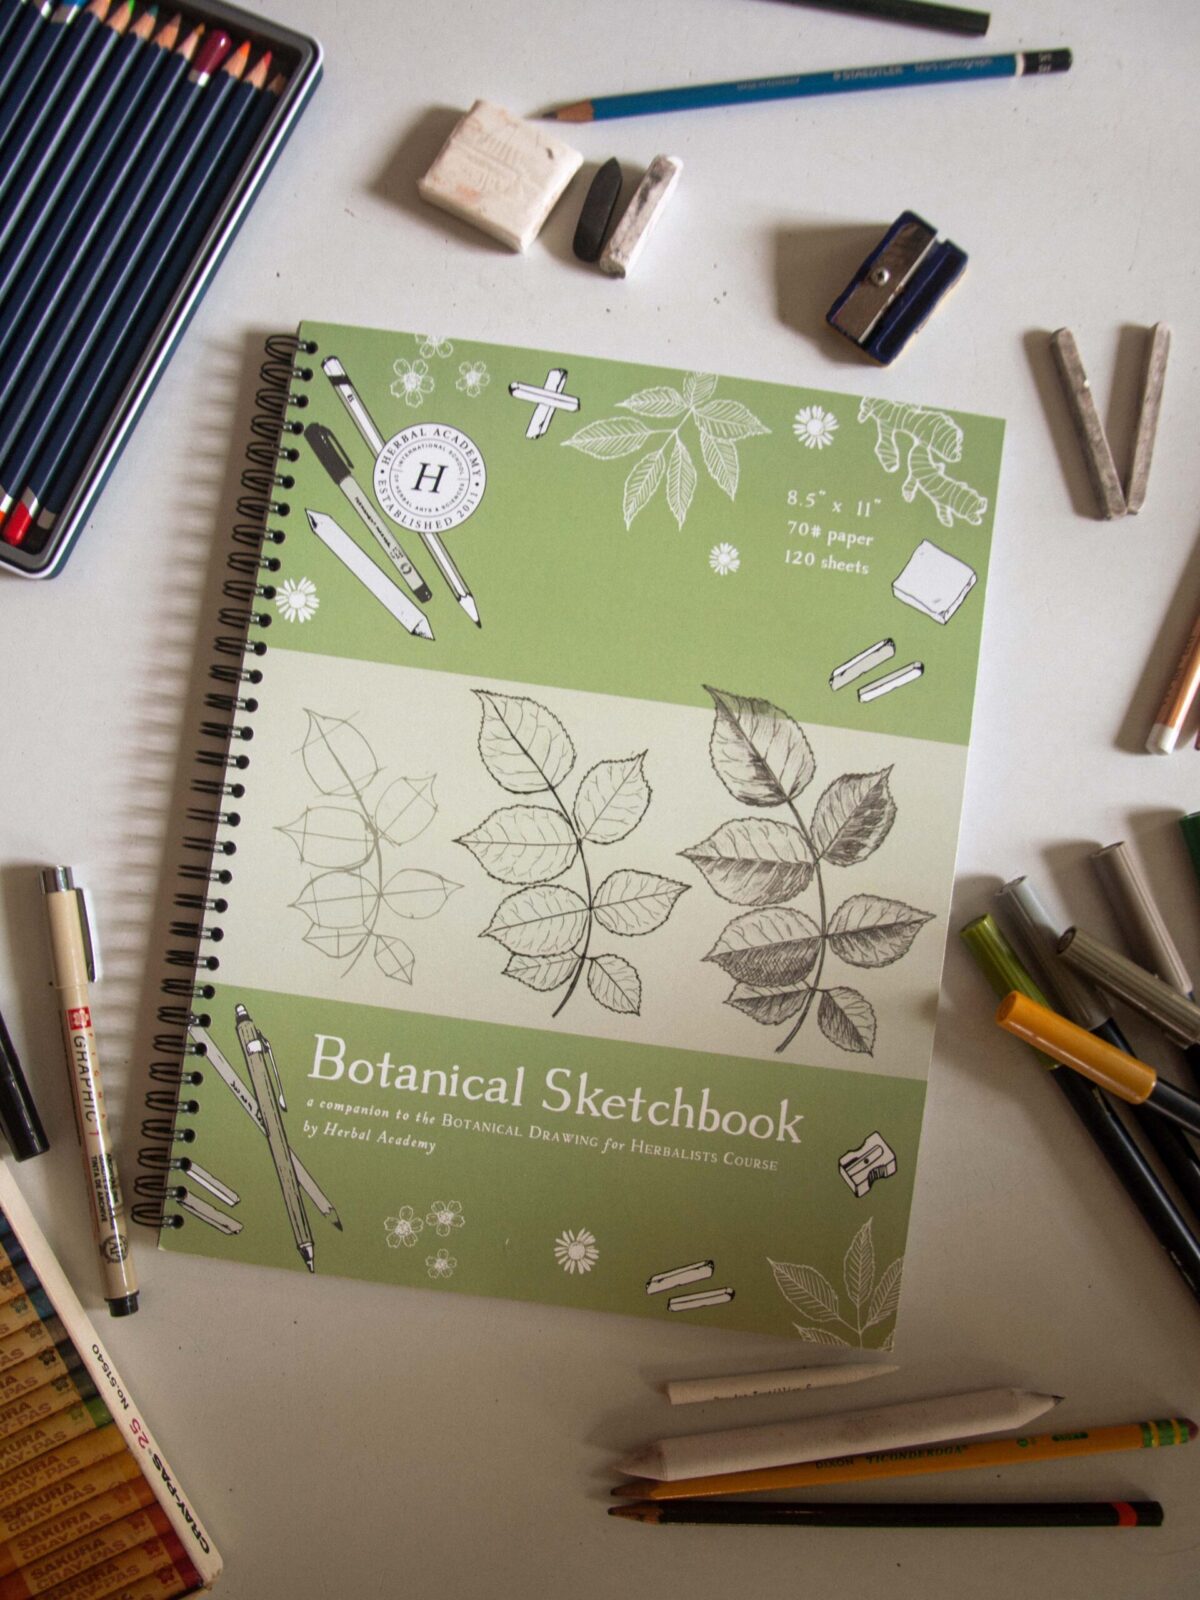 botanical sketchbook on table